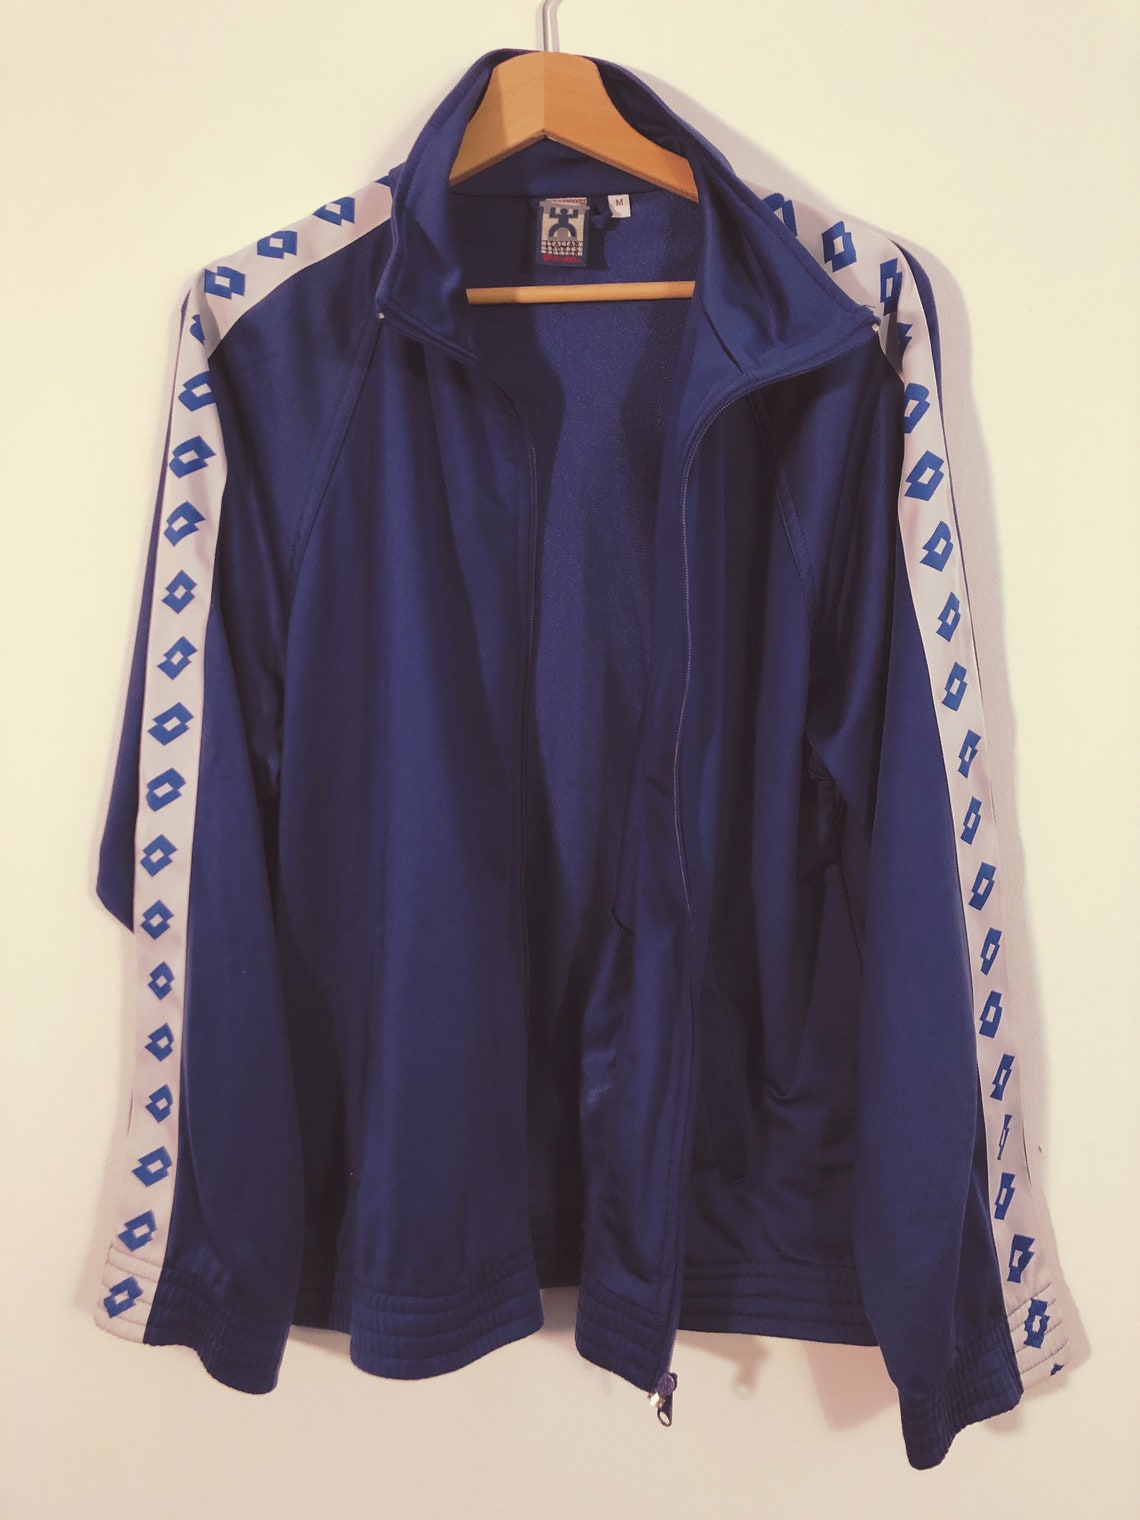 Lotto 90s Vintage Track Training Jacket Fußball Jacke blau | Etsy